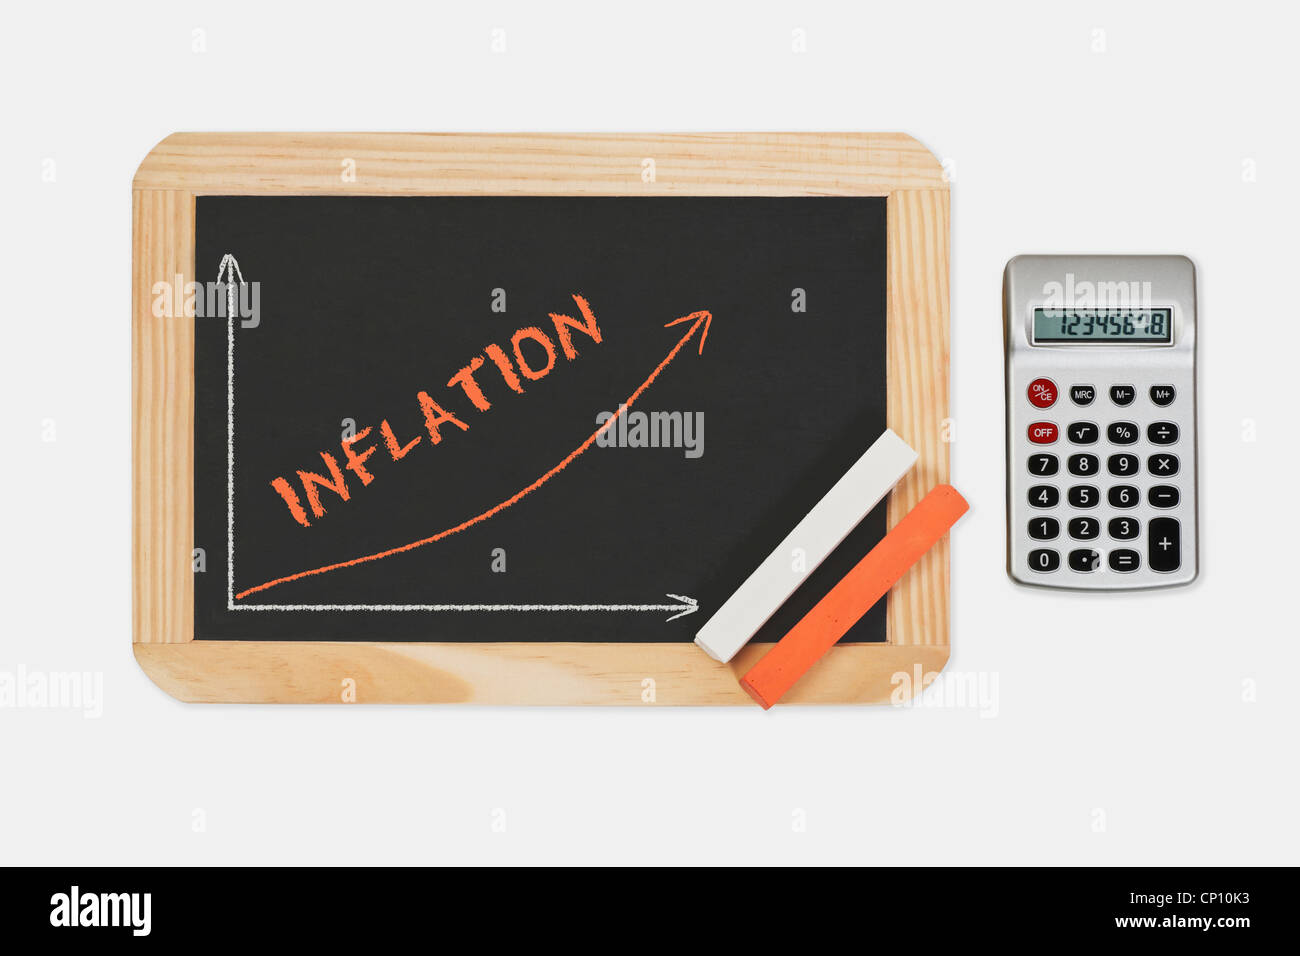 Eine Tafel. Ein Diagramm mit einer steigenden Kurve dazu. An der Tafel ist die Wort Inflation, Rechner auf der rechten Seite. Stockfoto